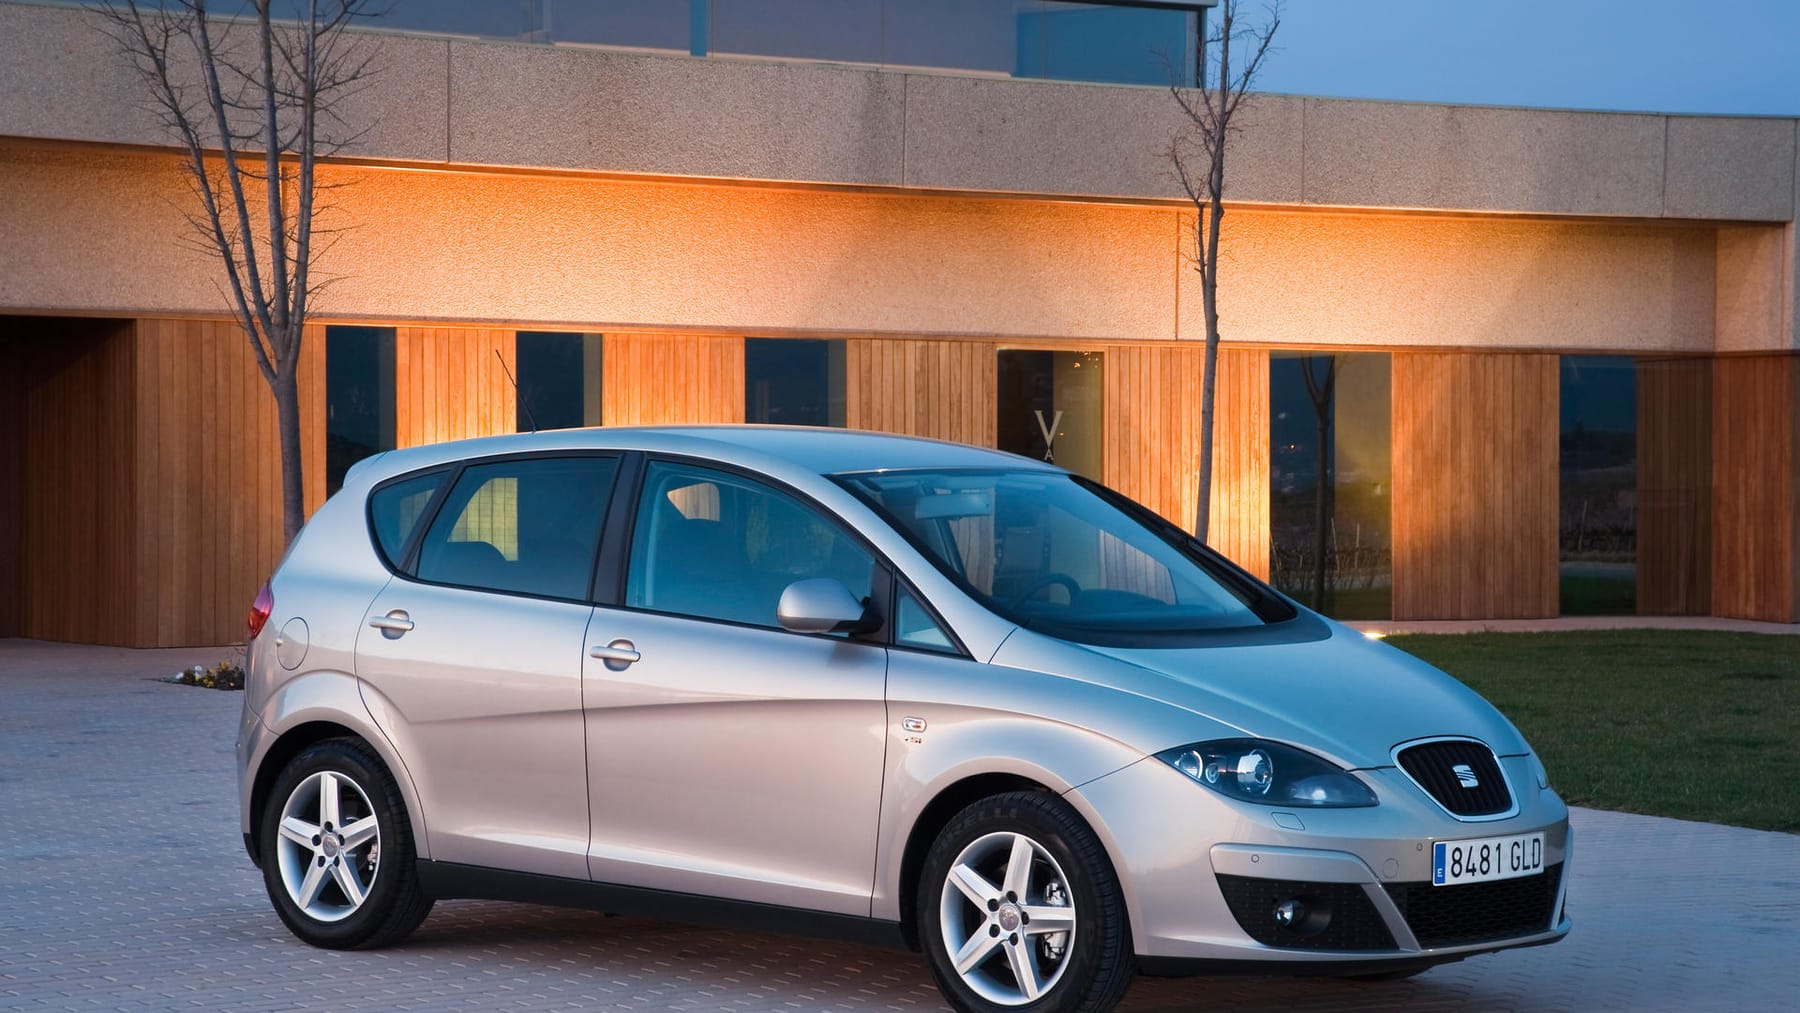 Opel Insignia als Gebrauchter: Was taugt das Modell?